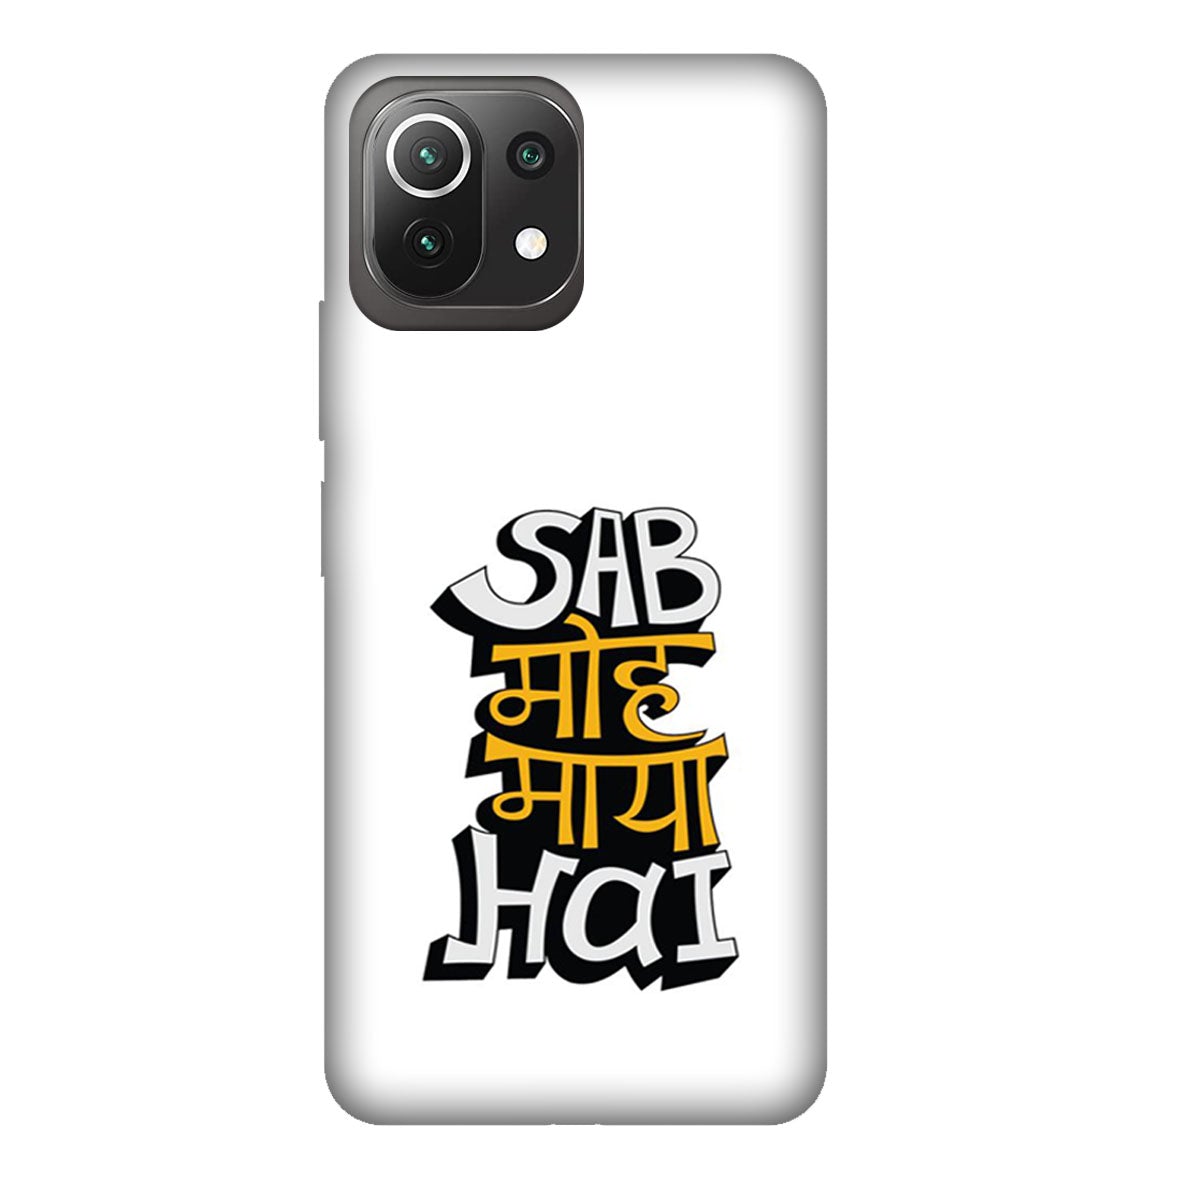 Sab Moh Maya Hai - Mobile Phone Cover - Hard Case